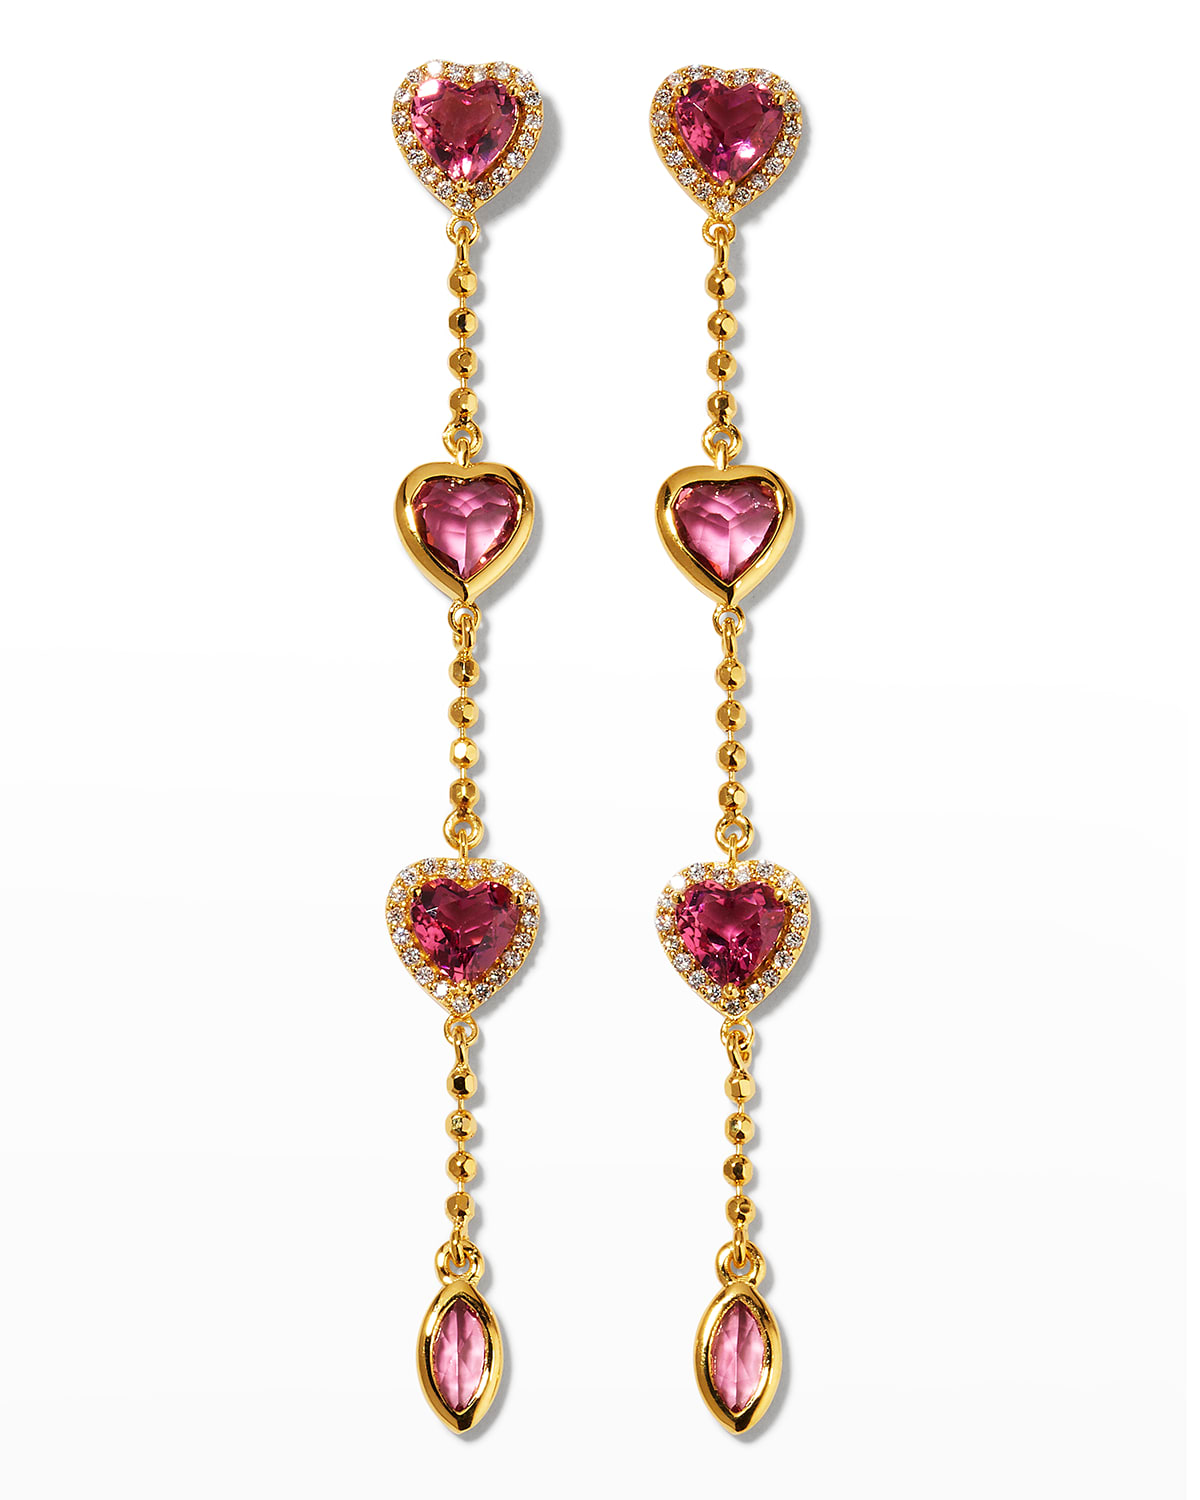 20k Rubellite Heart Drop Earrings with Diamonds